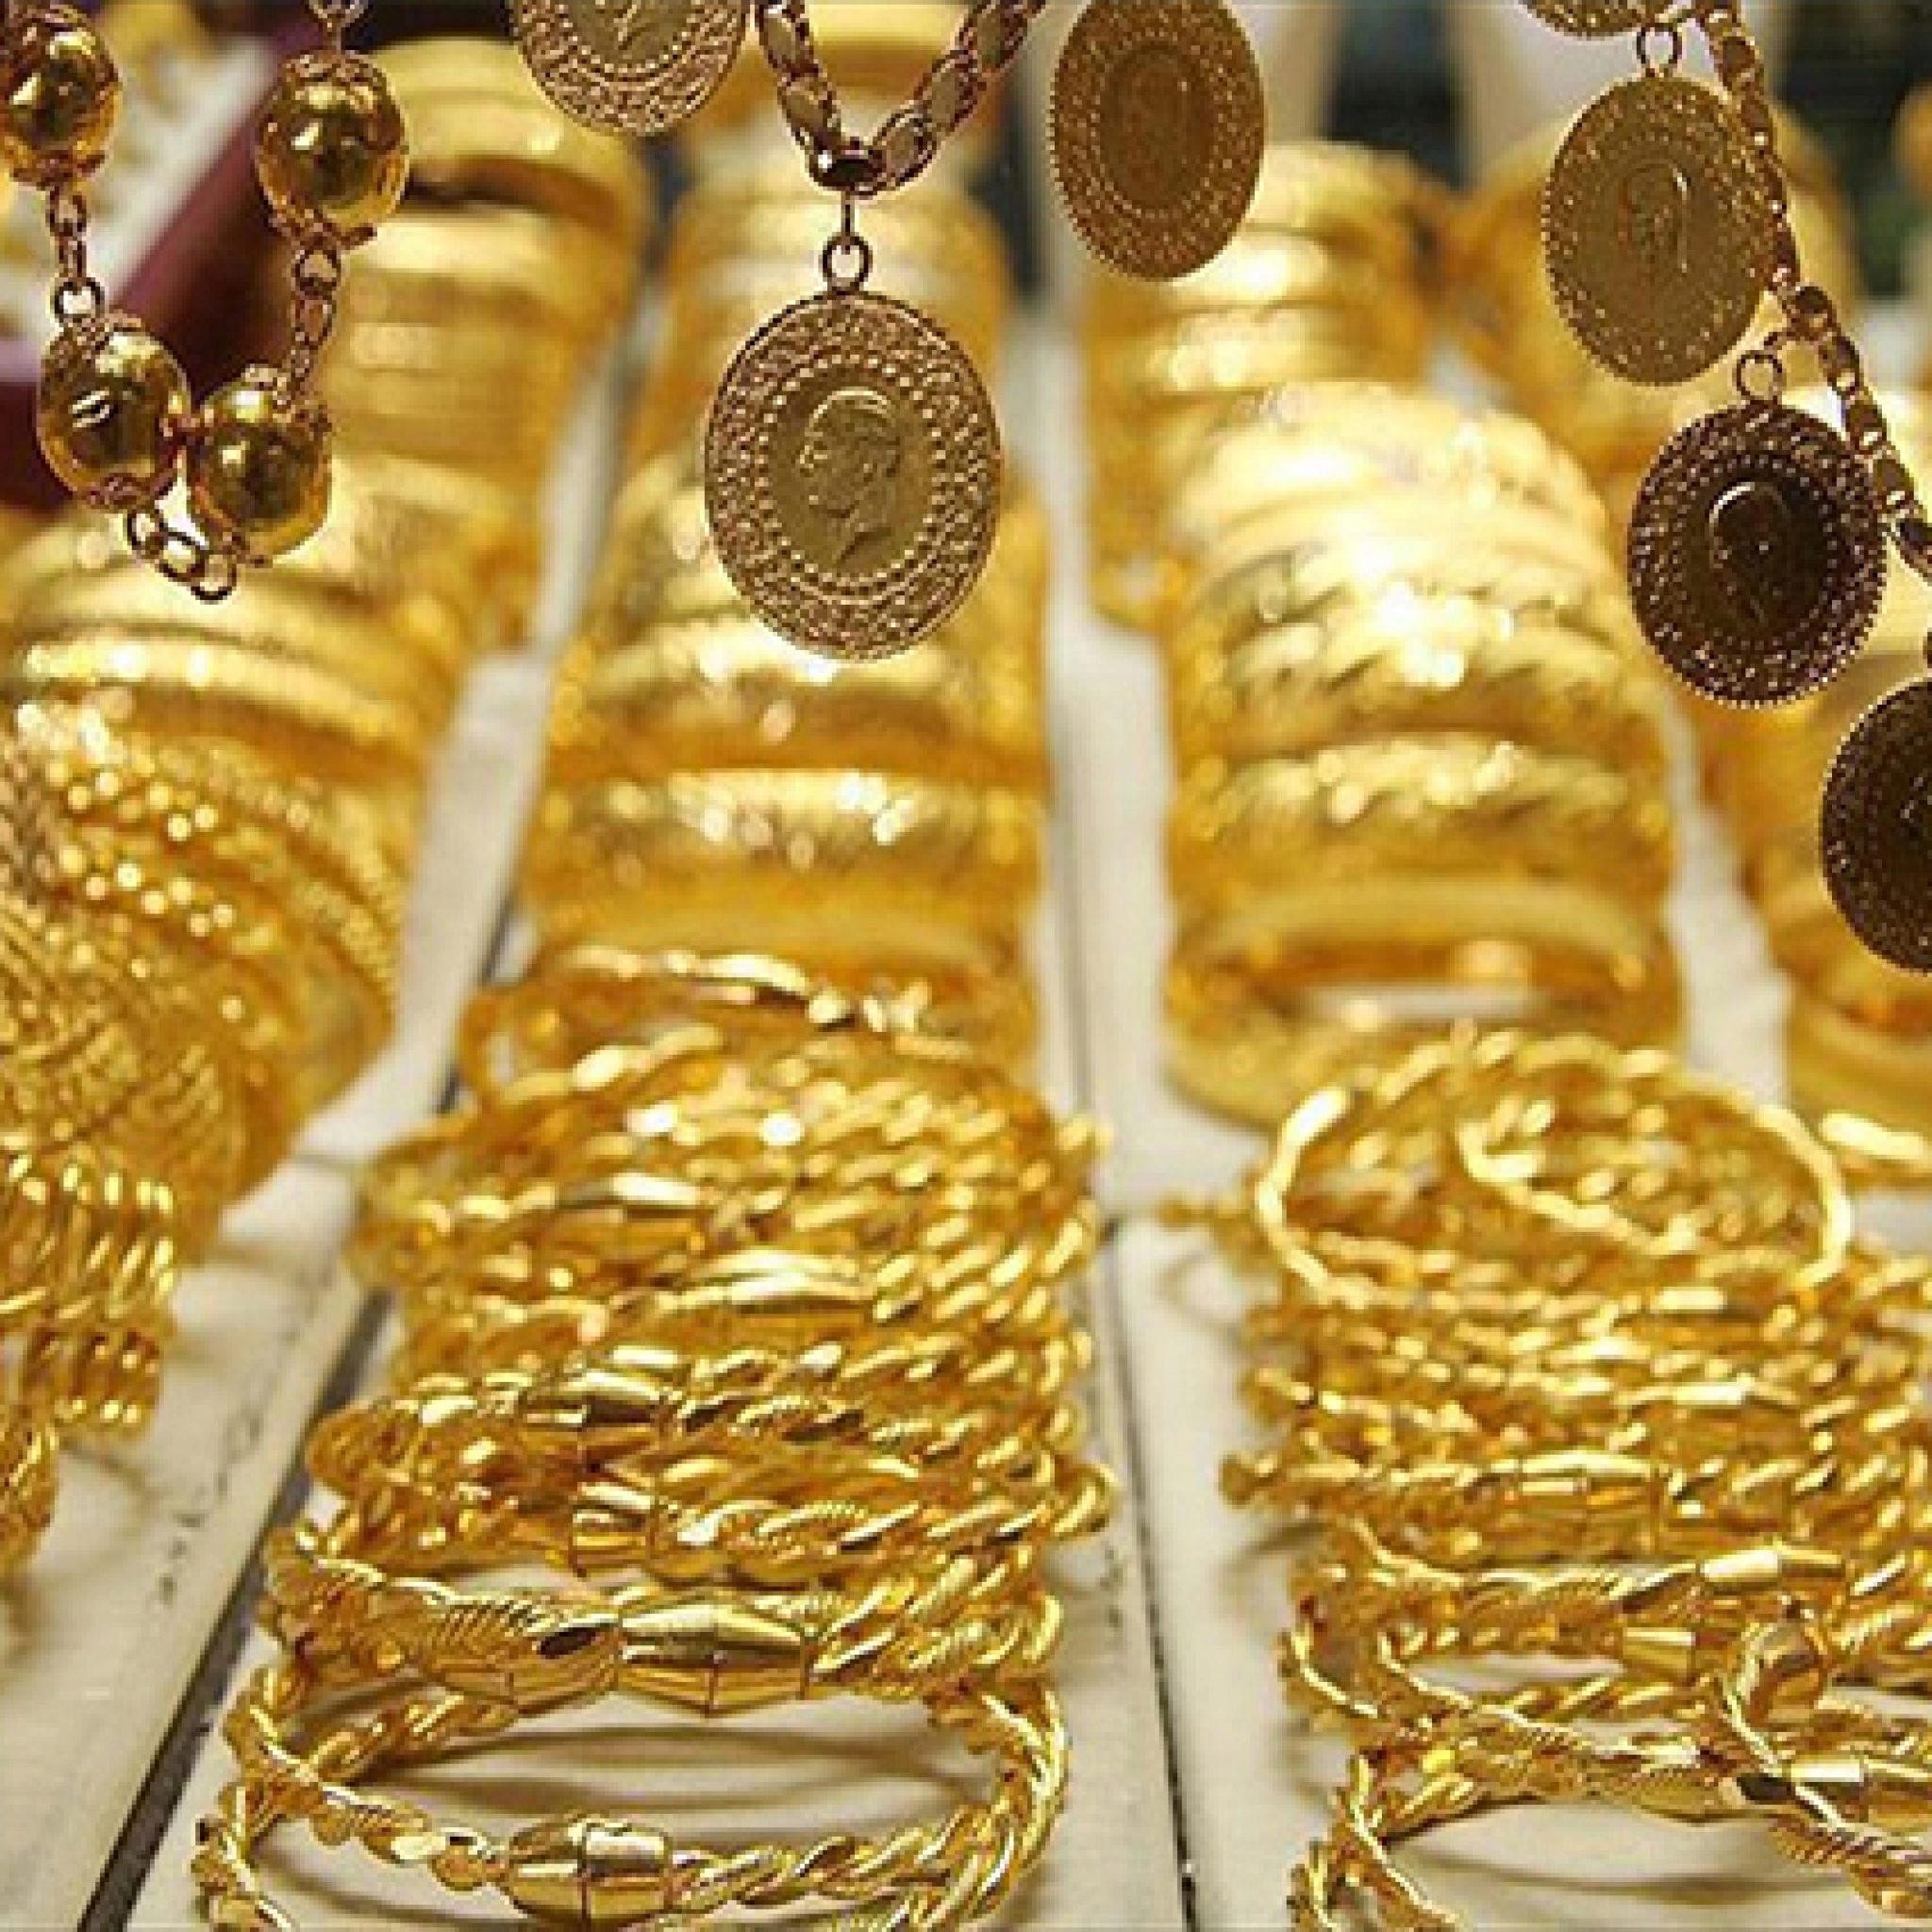 أسعار الذهب اليوم في مصر 4122020 .. صعود عيار 21 جريدة المال